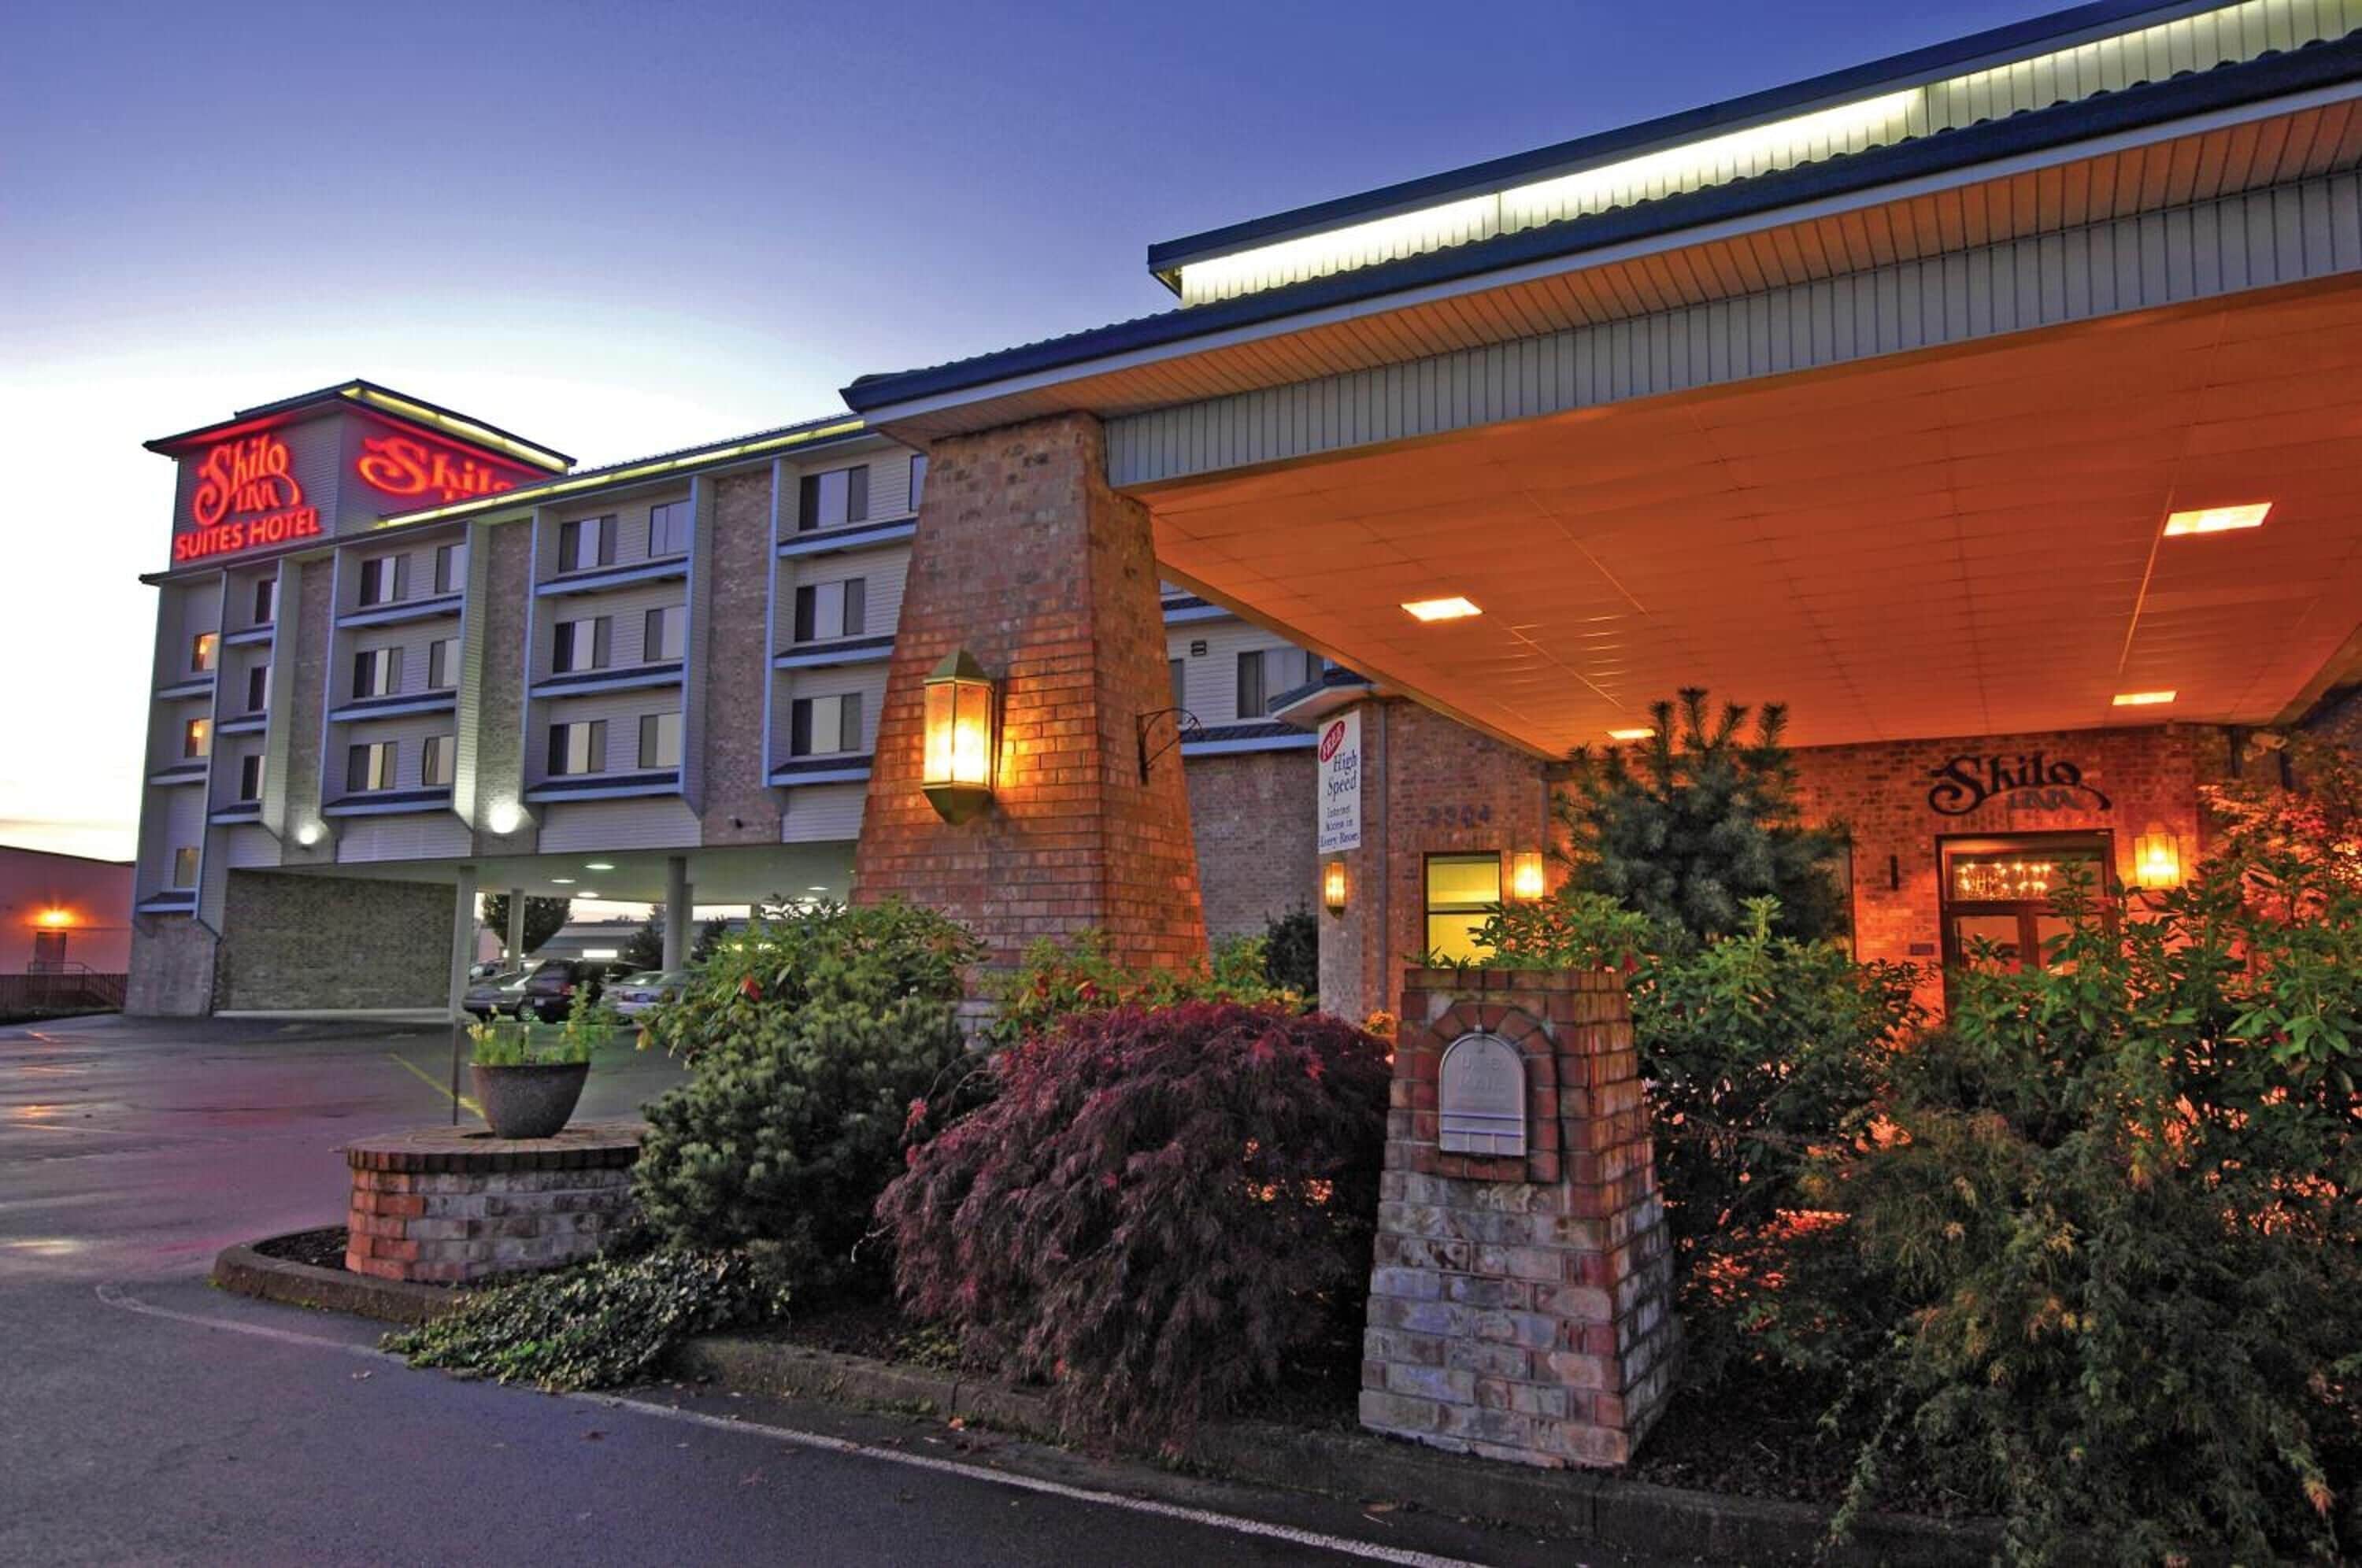 Building view of Shilo Inn Suites Salem